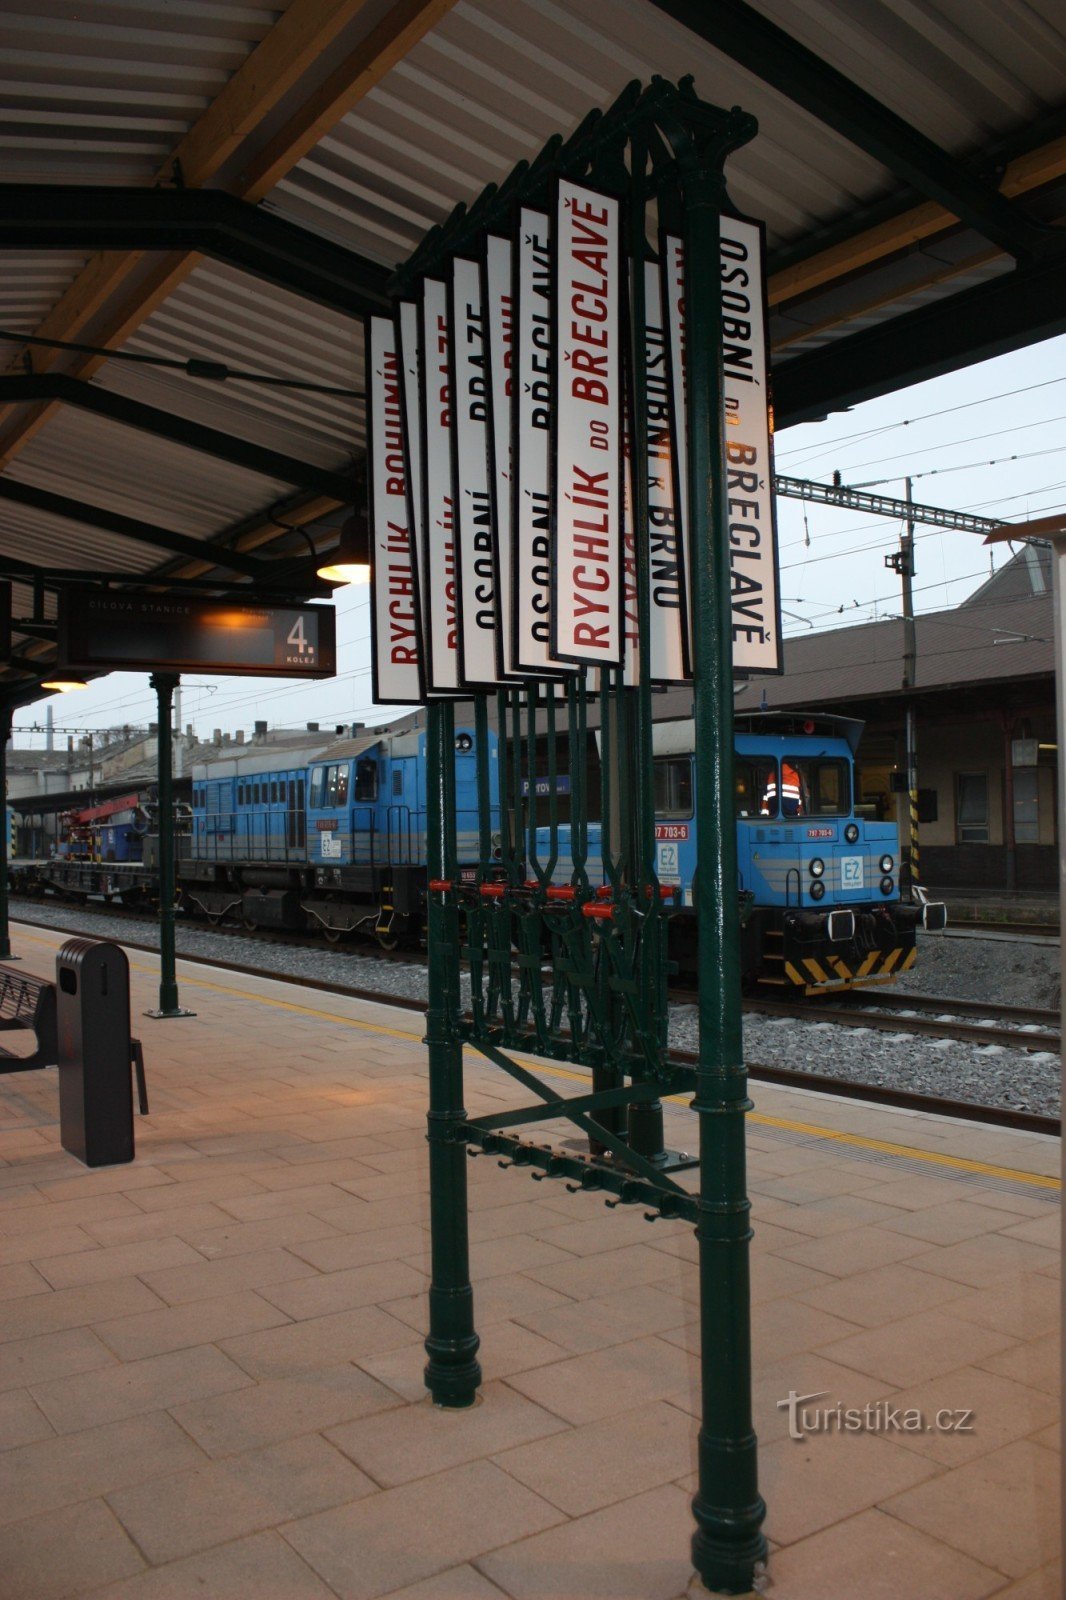 Placa de informações da plataforma histórica na segunda plataforma da estação ferroviária